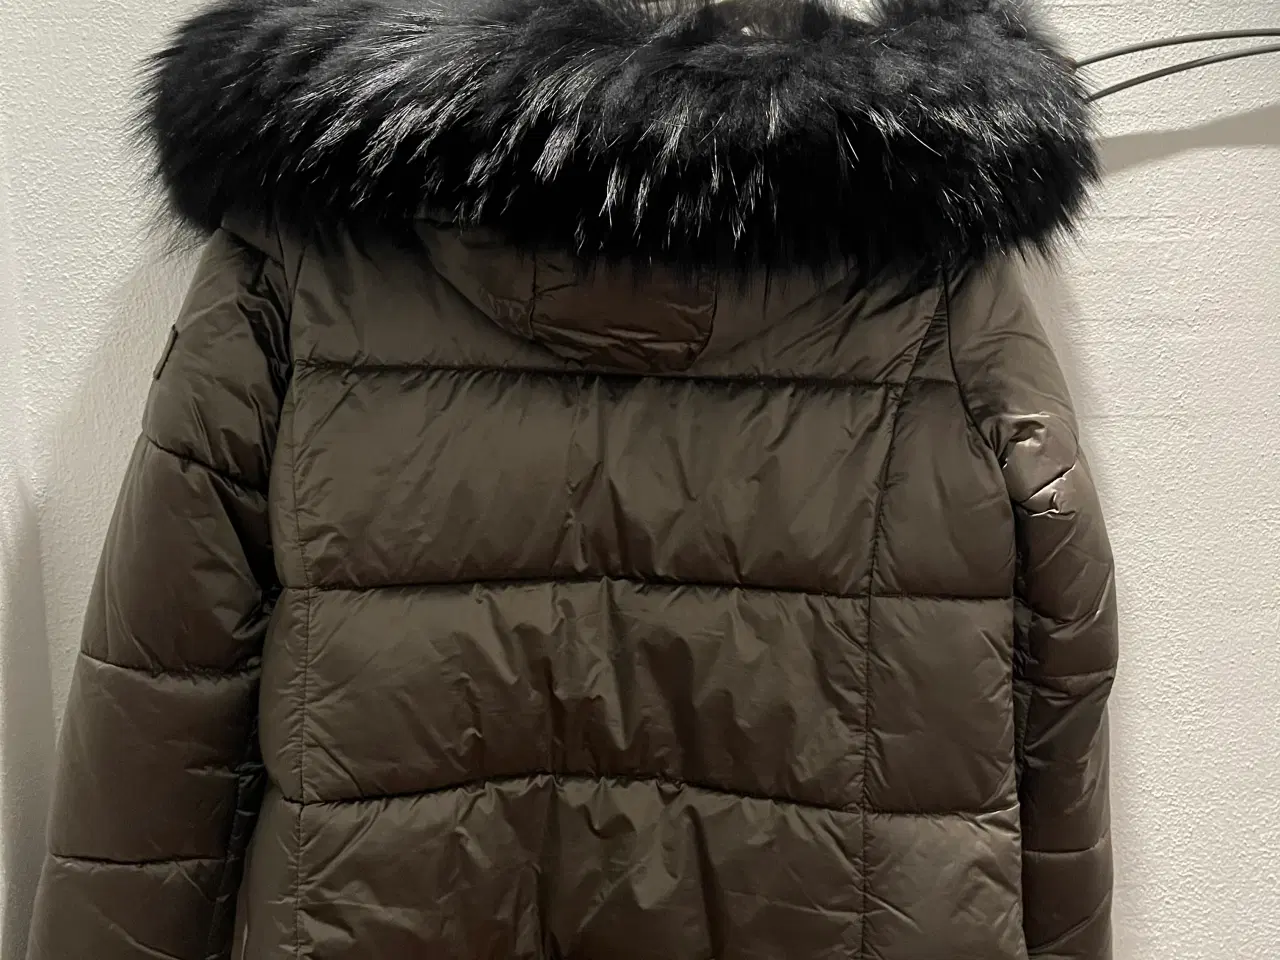 Billede 2 - Dun jakke med sort pels.